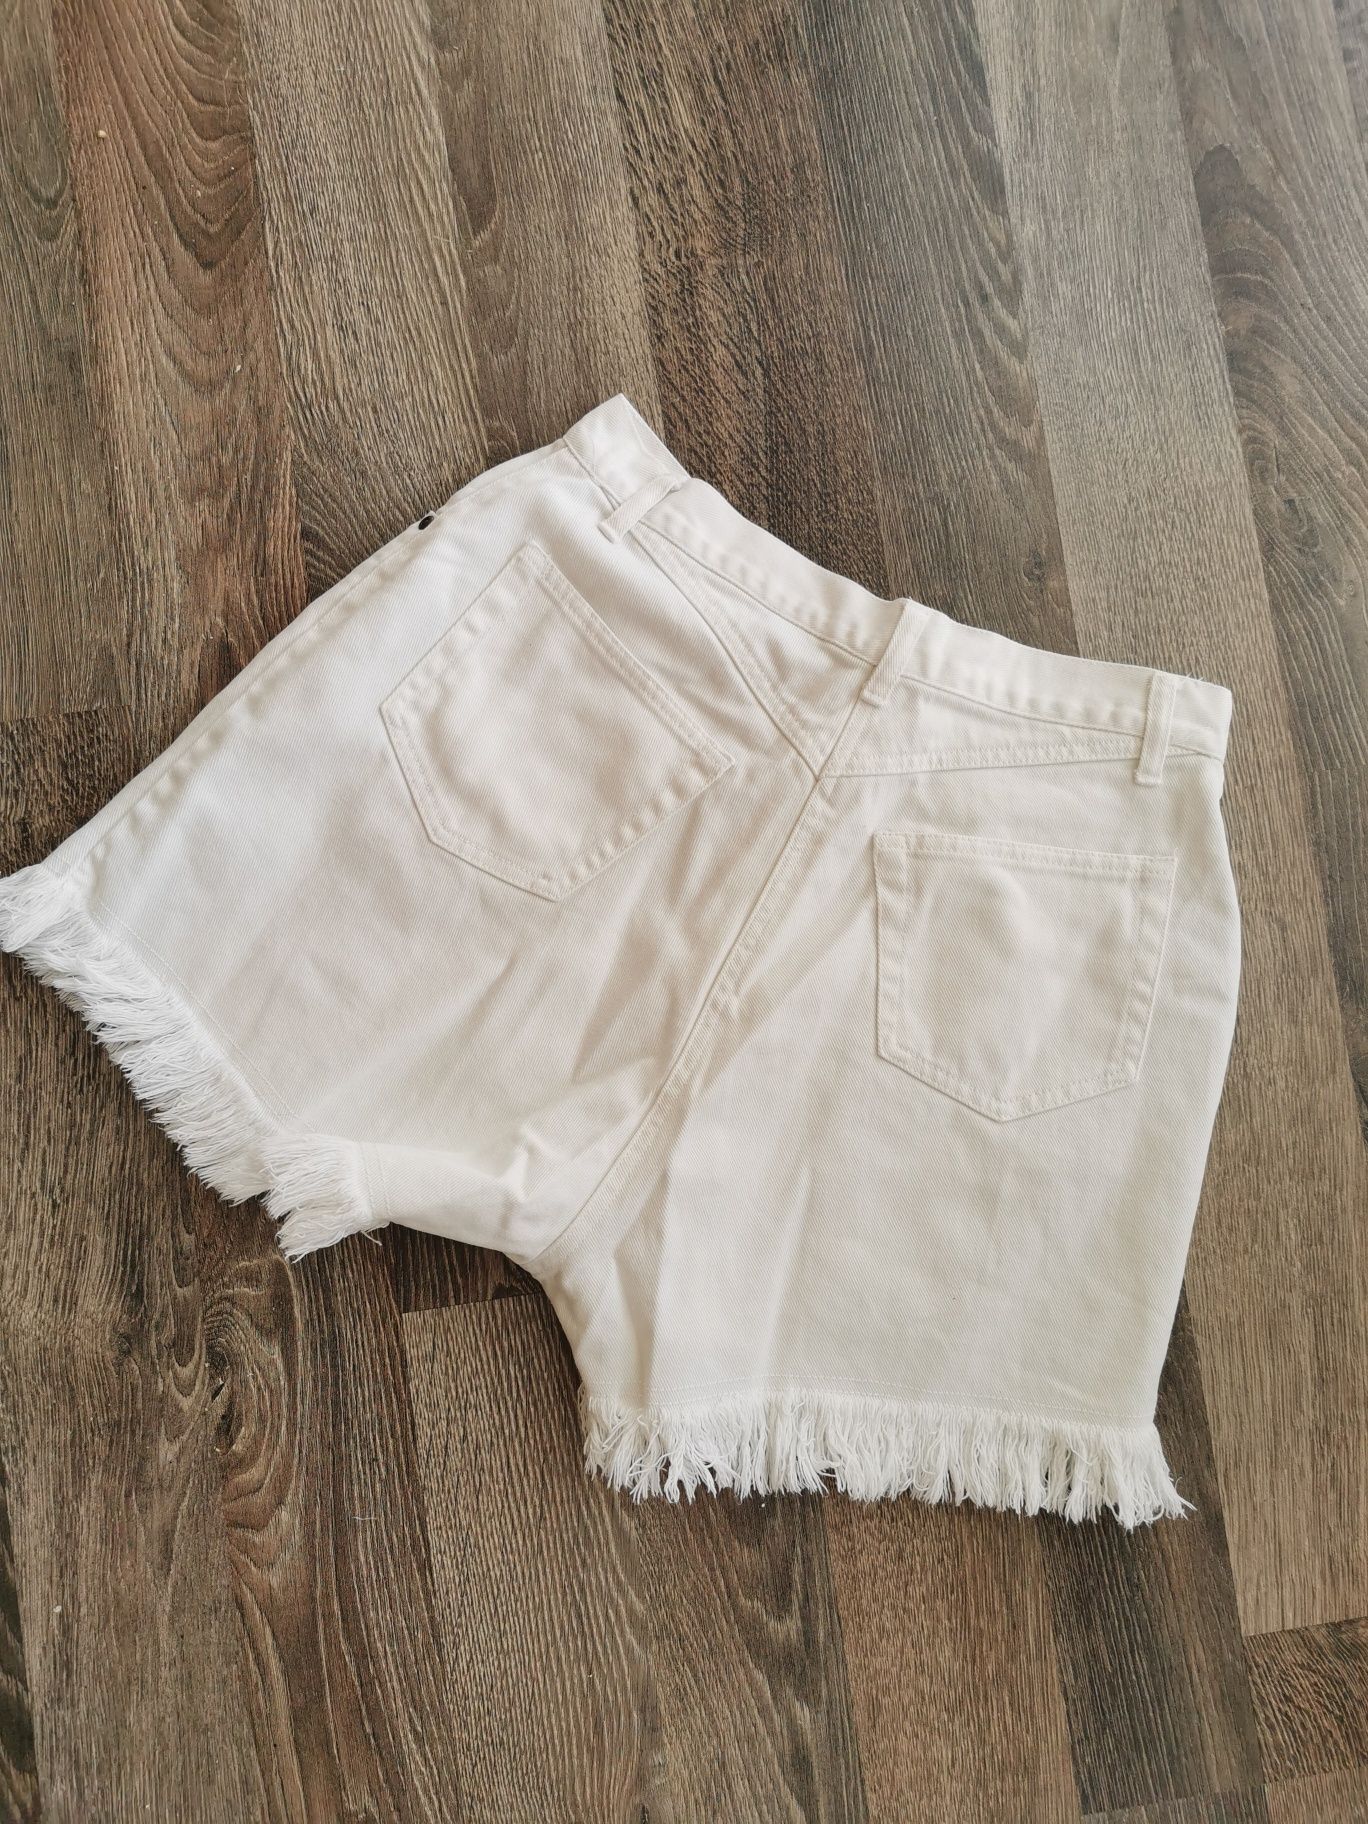 Białe jeansowe szorty bermudy wysoki stan Vintage spodenki bawełna whi